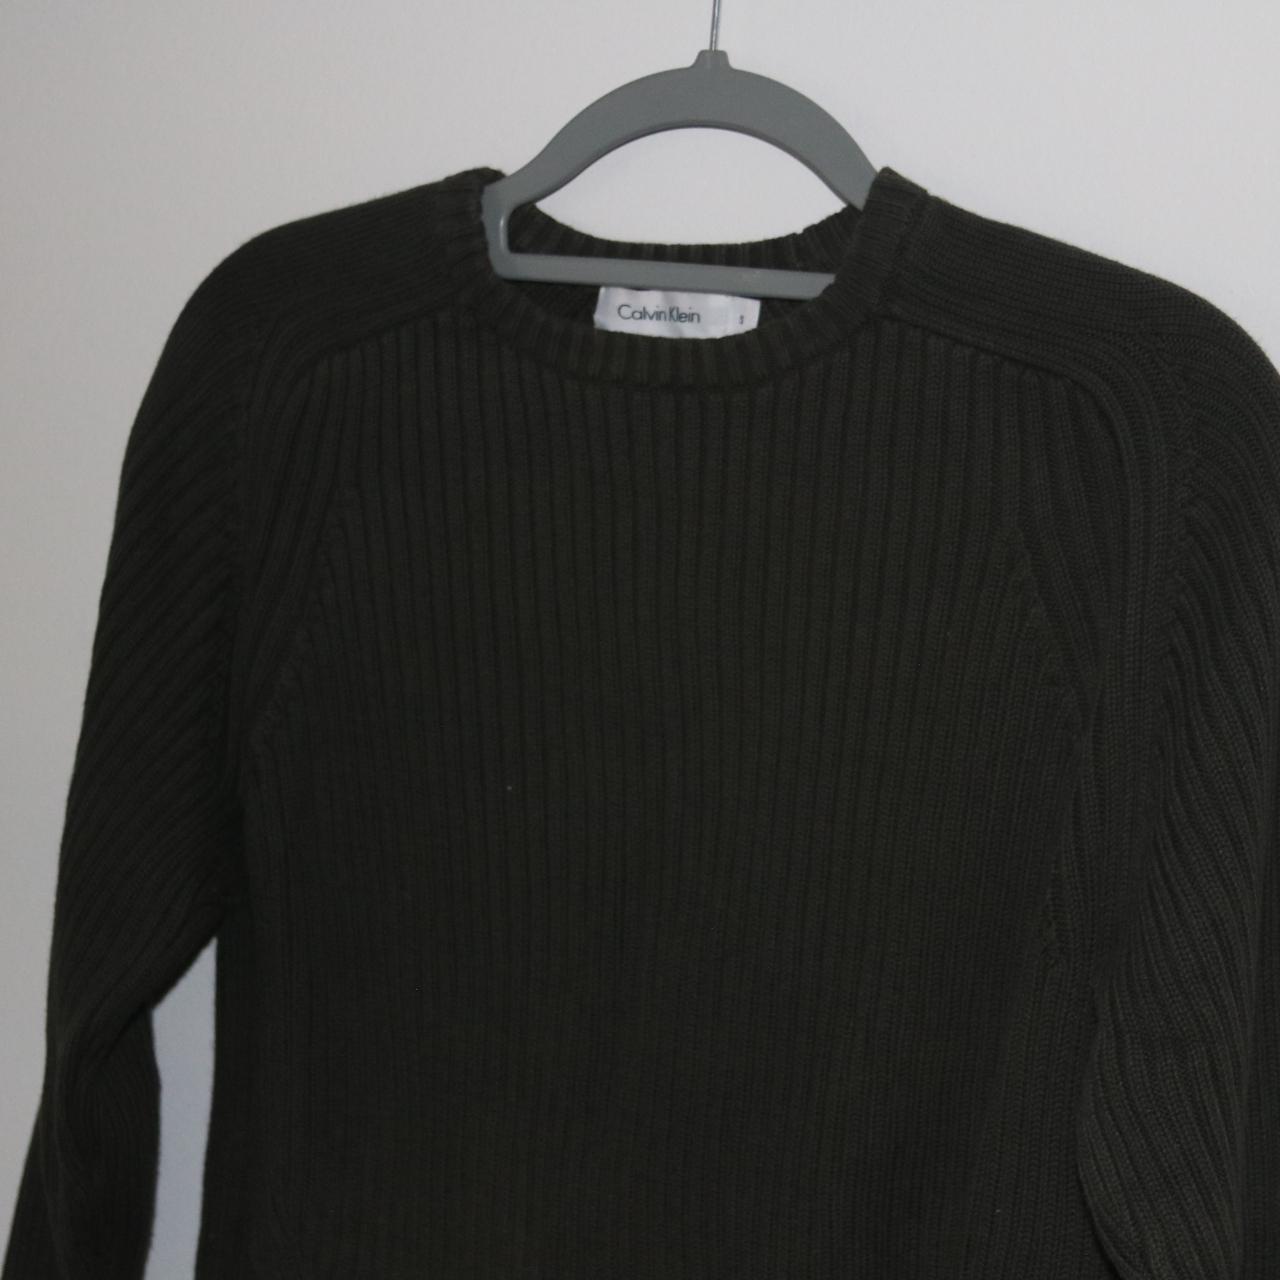 Calvin Klein sweater - Depop